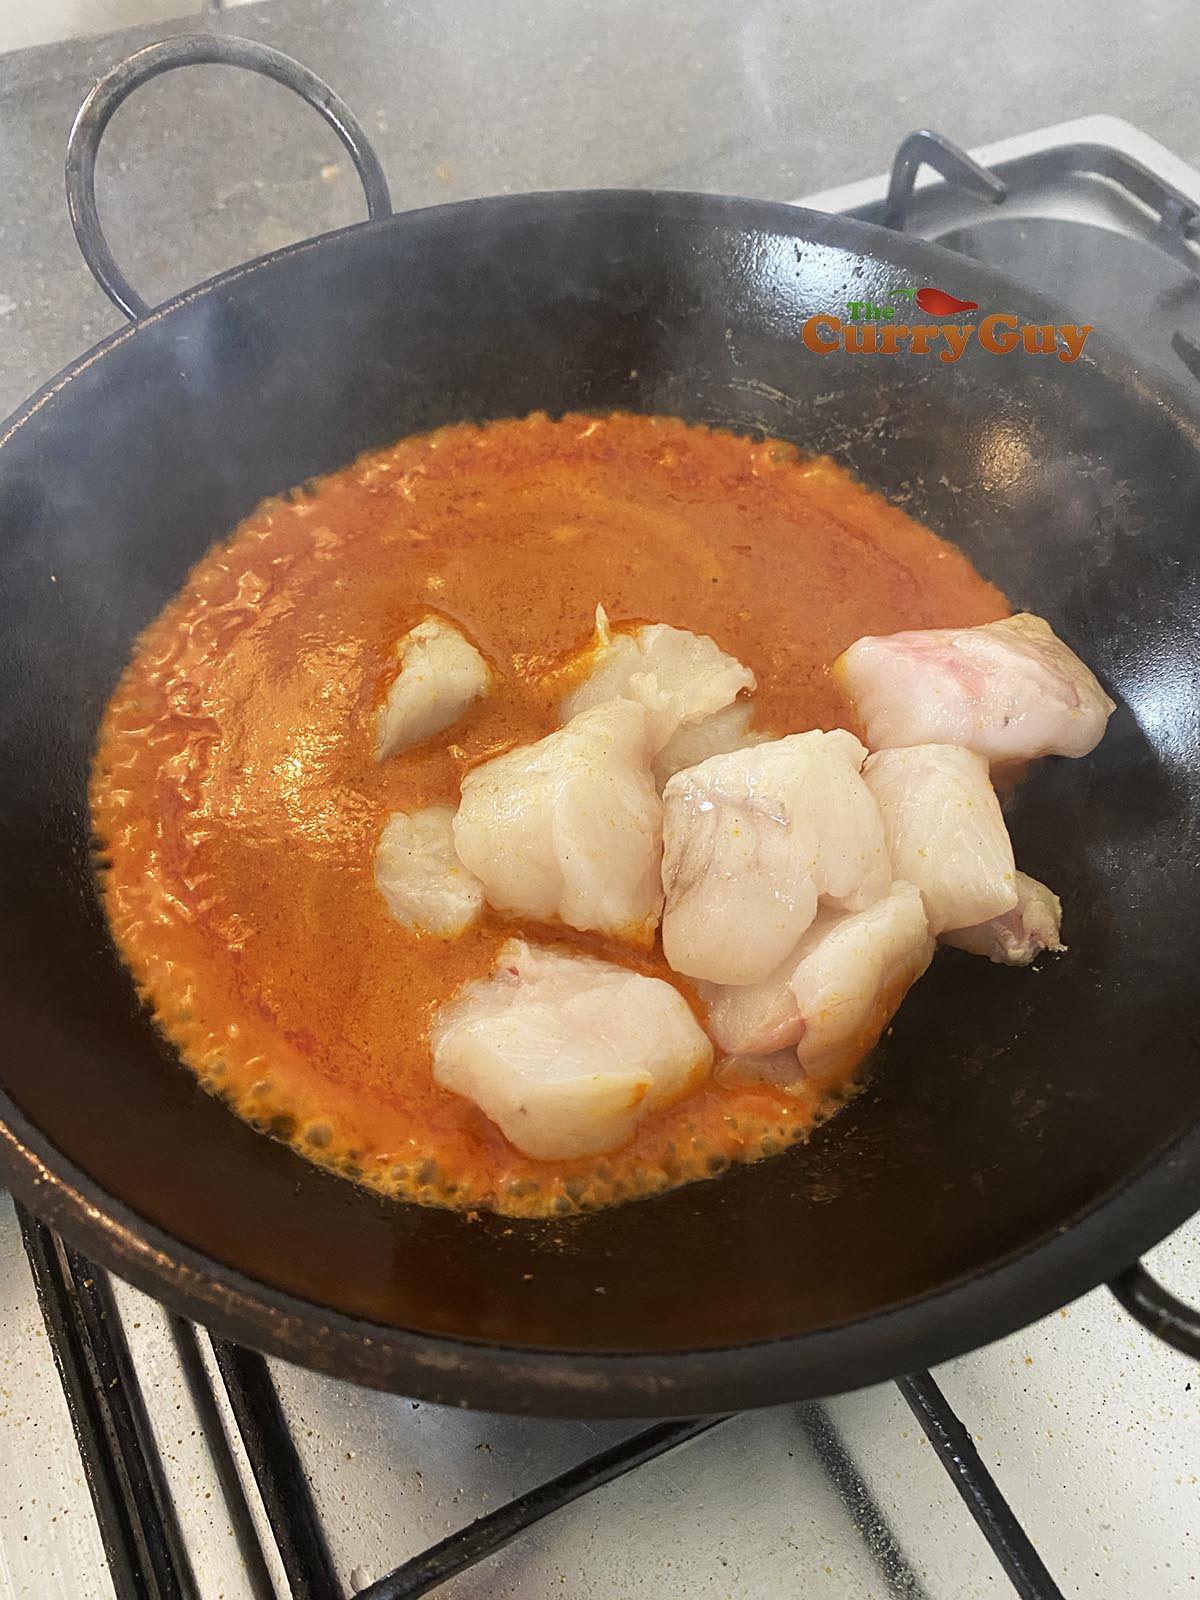 Adding monkfish to the pan